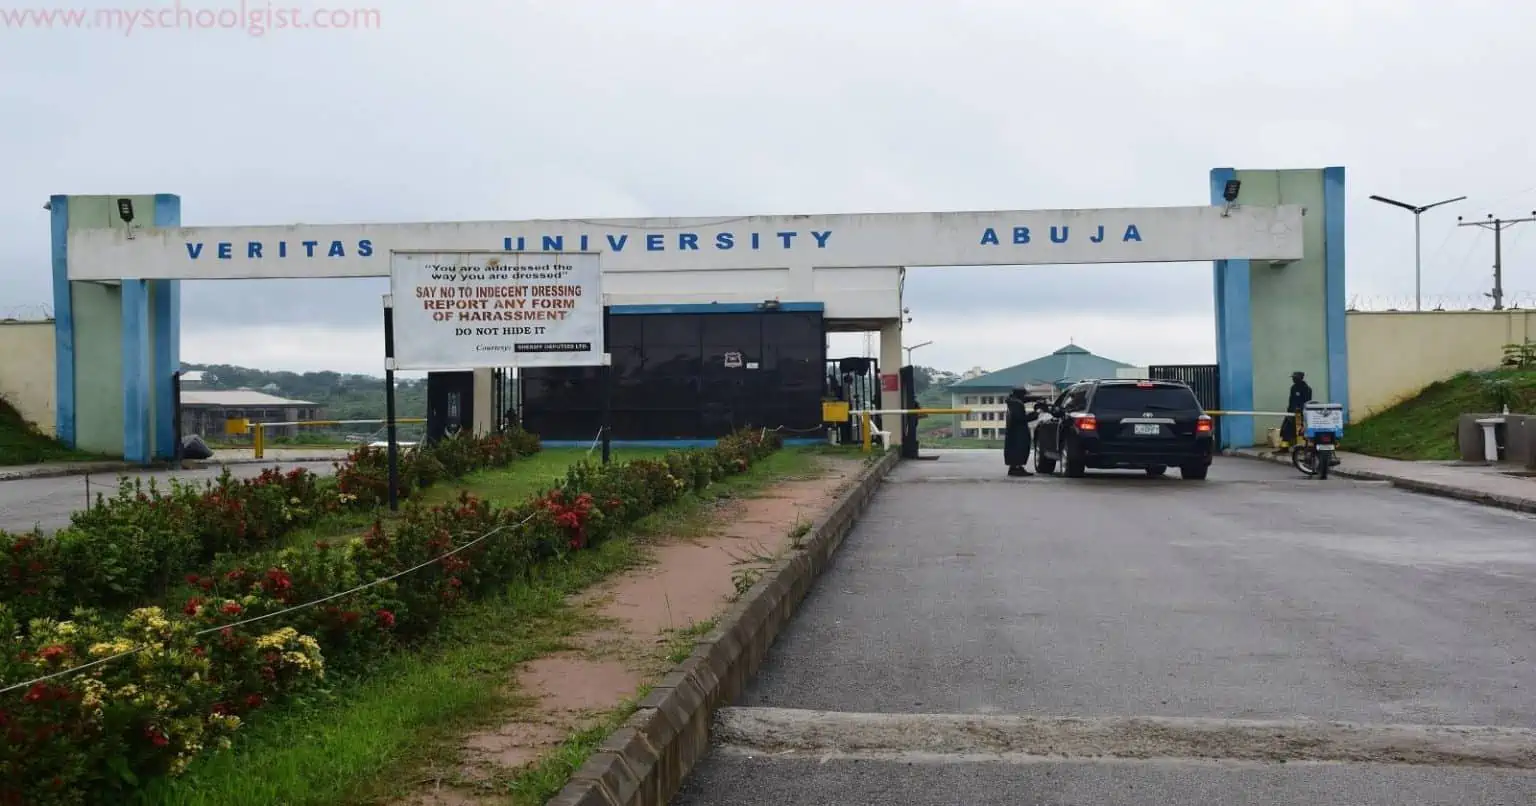 Veritas University Abuja 1536x806 1